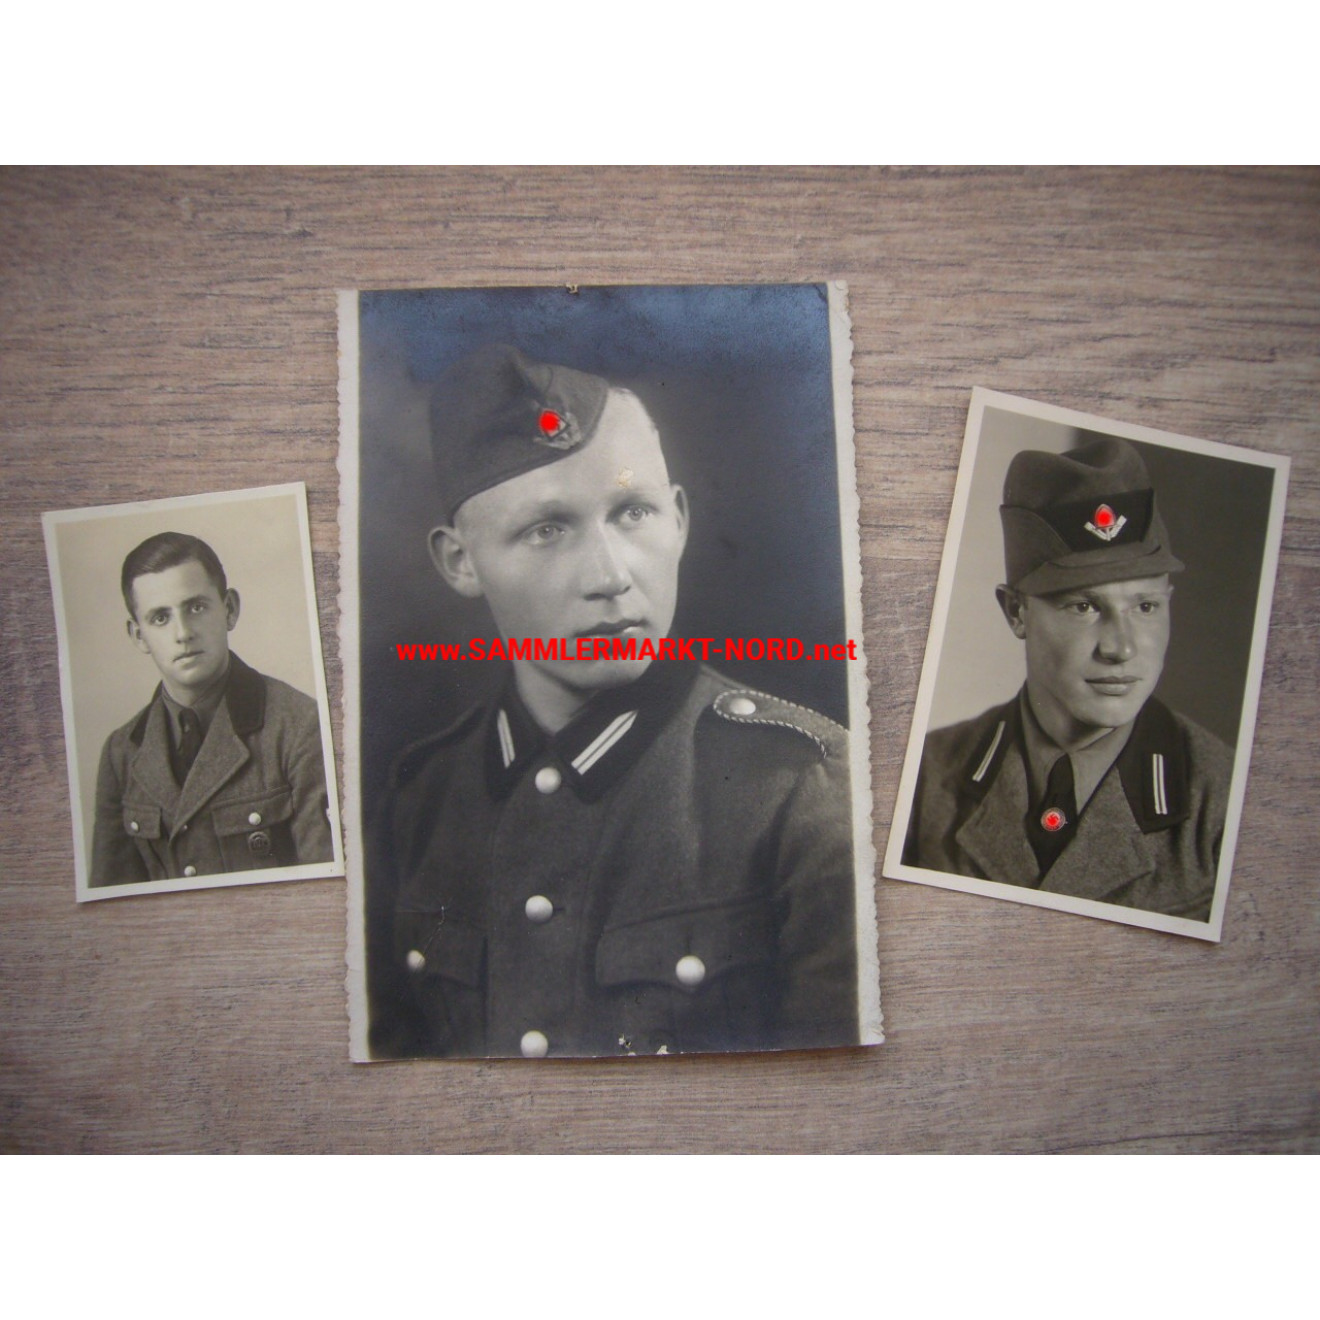 3 x RAD Reichsarbeitsdienst Portraits